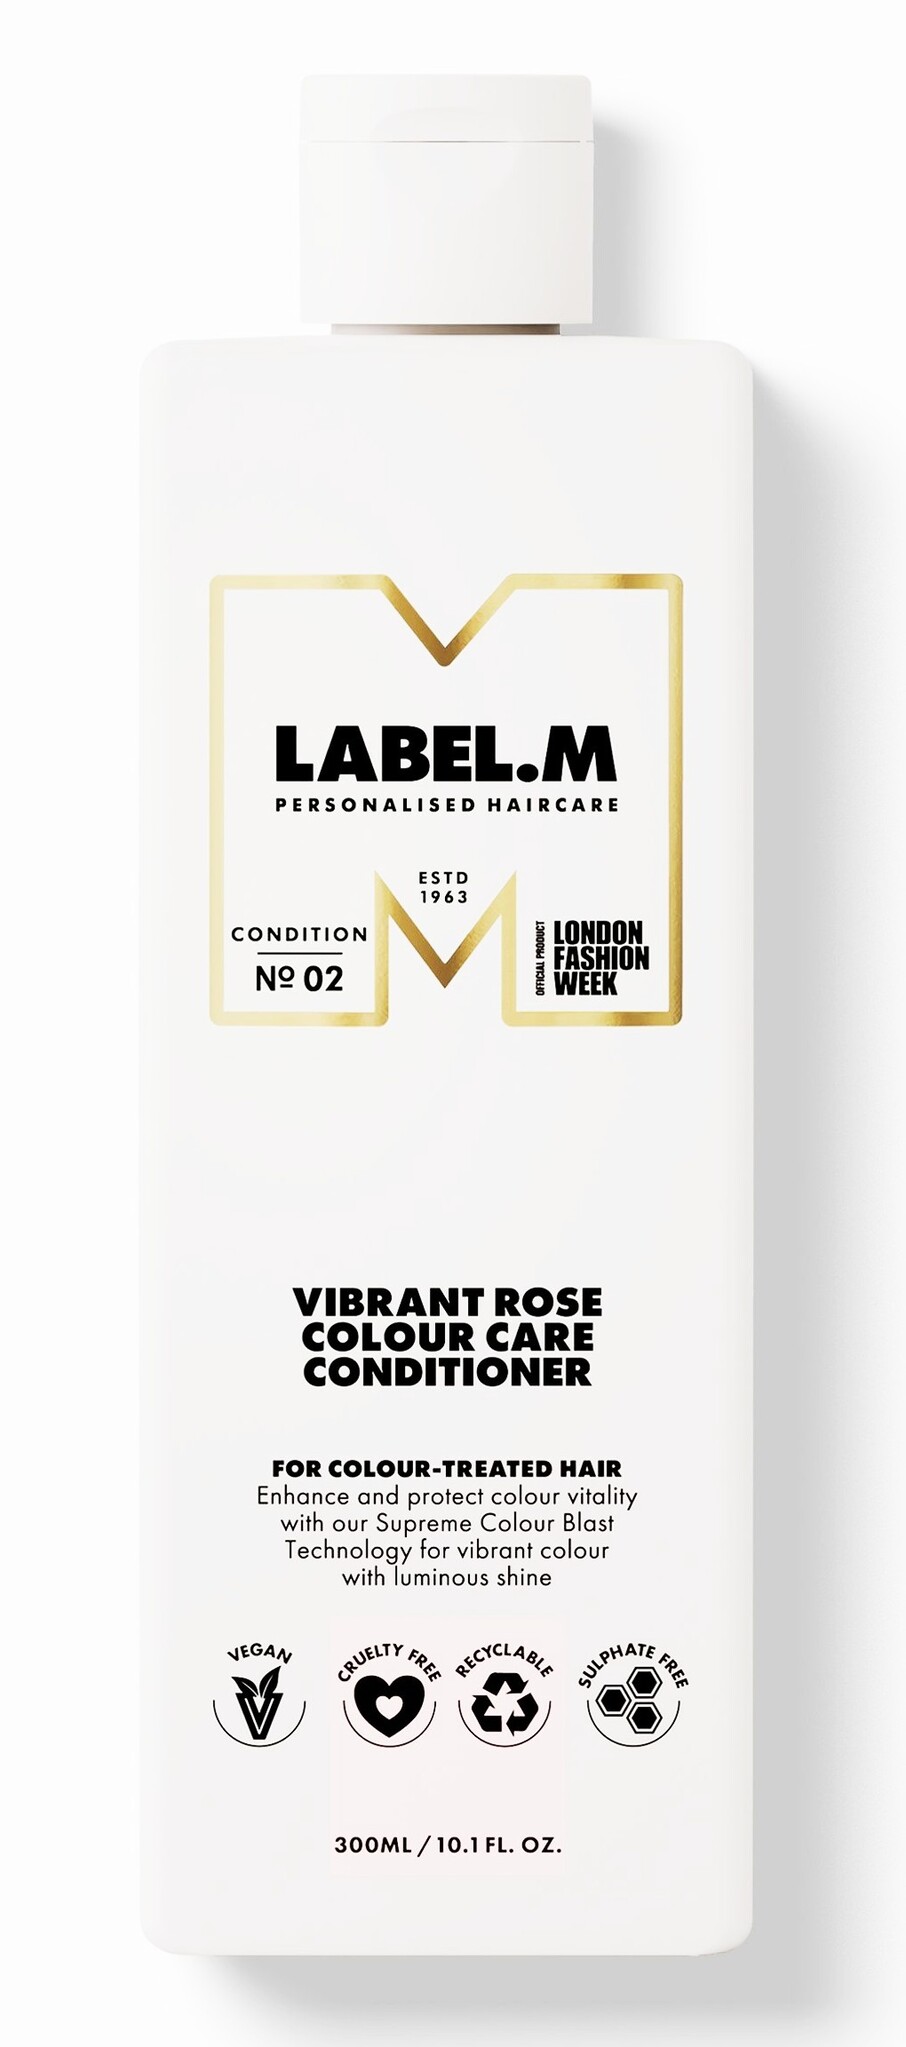 Label.m Vibrant Rose Colour Care Conditioner 300ml